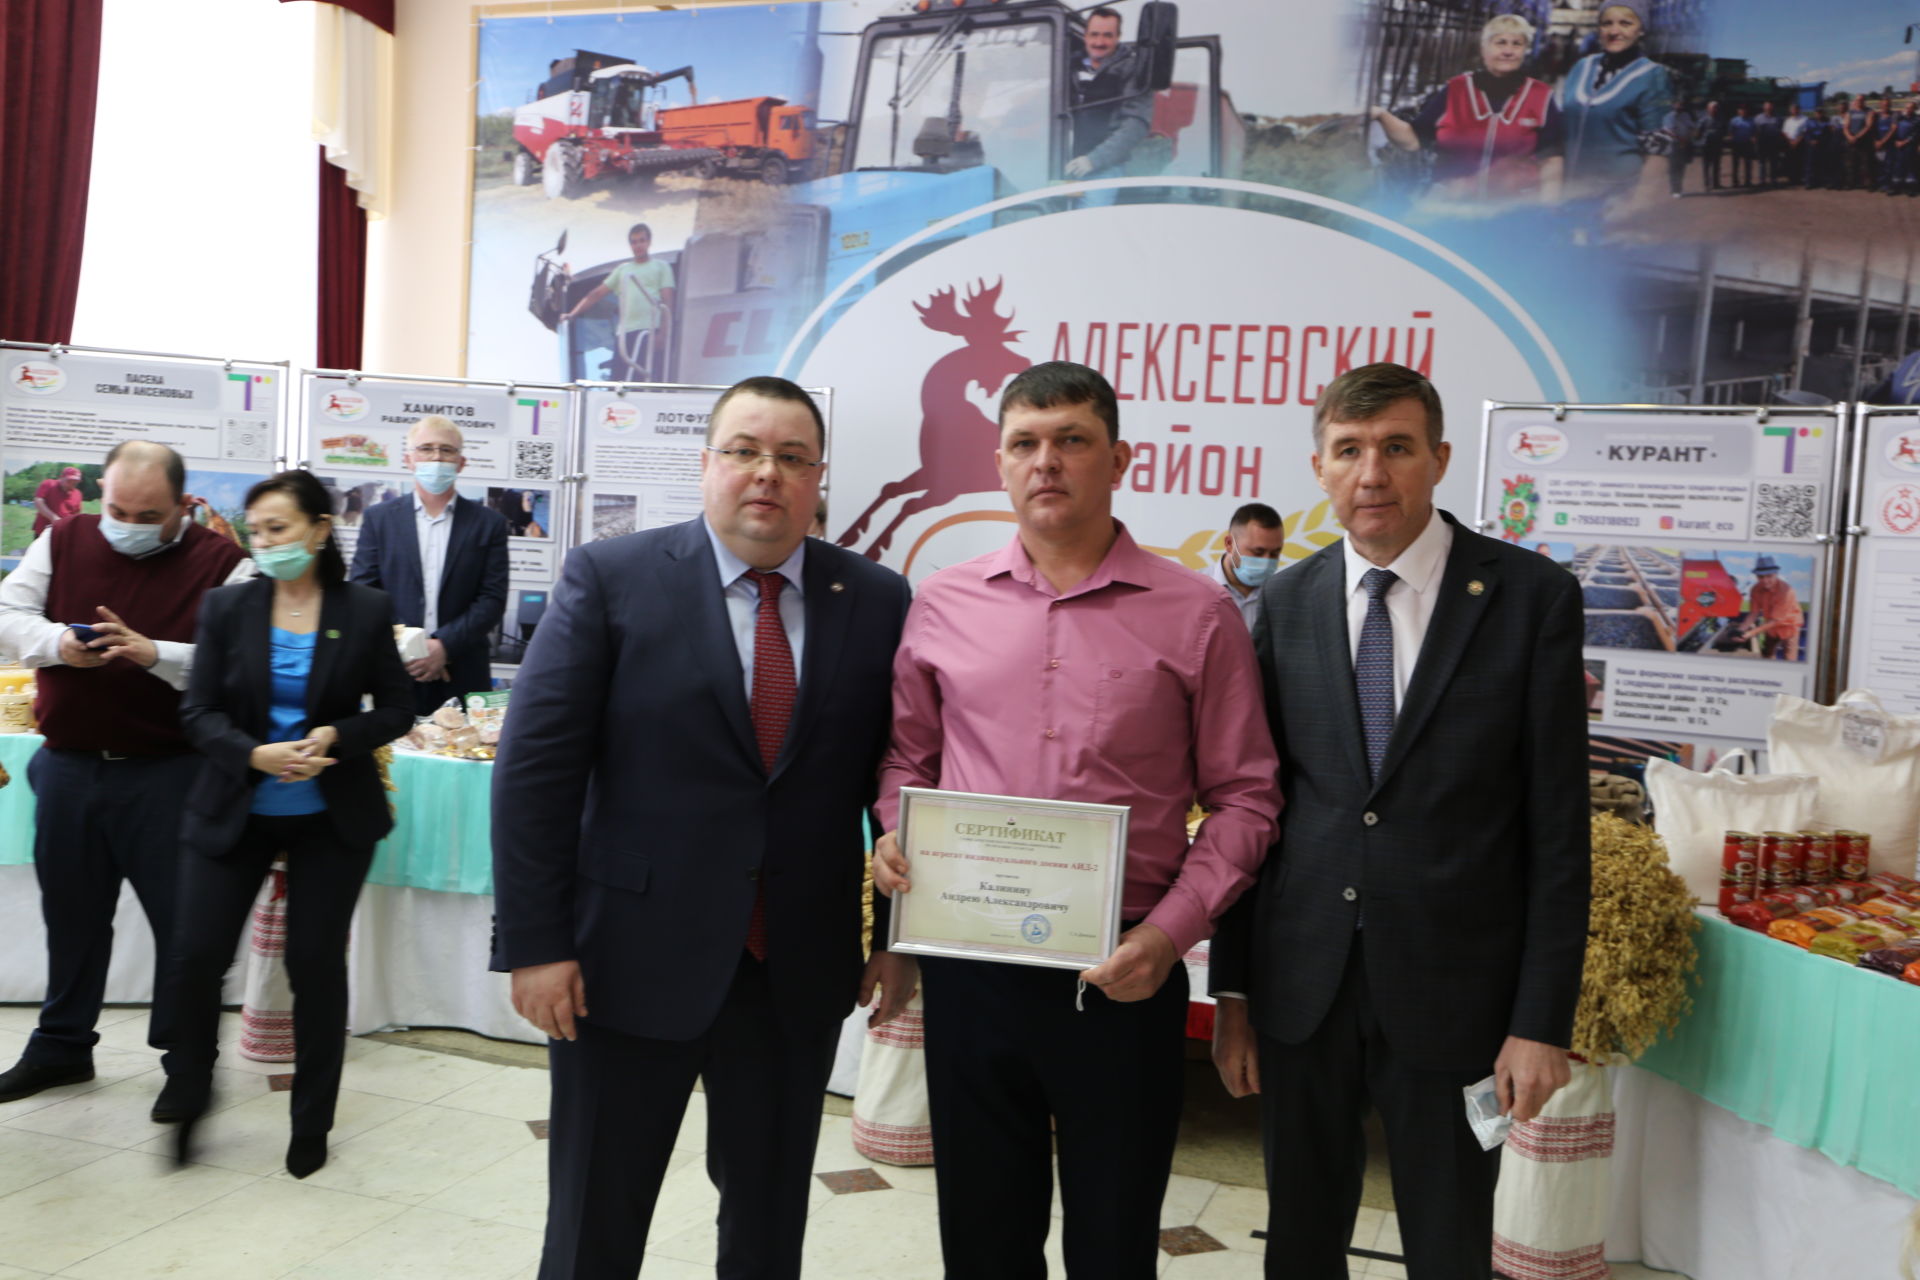 Фоторепортаж: выставка товаропроизводителей и почетные награды жителей Алексеевского района